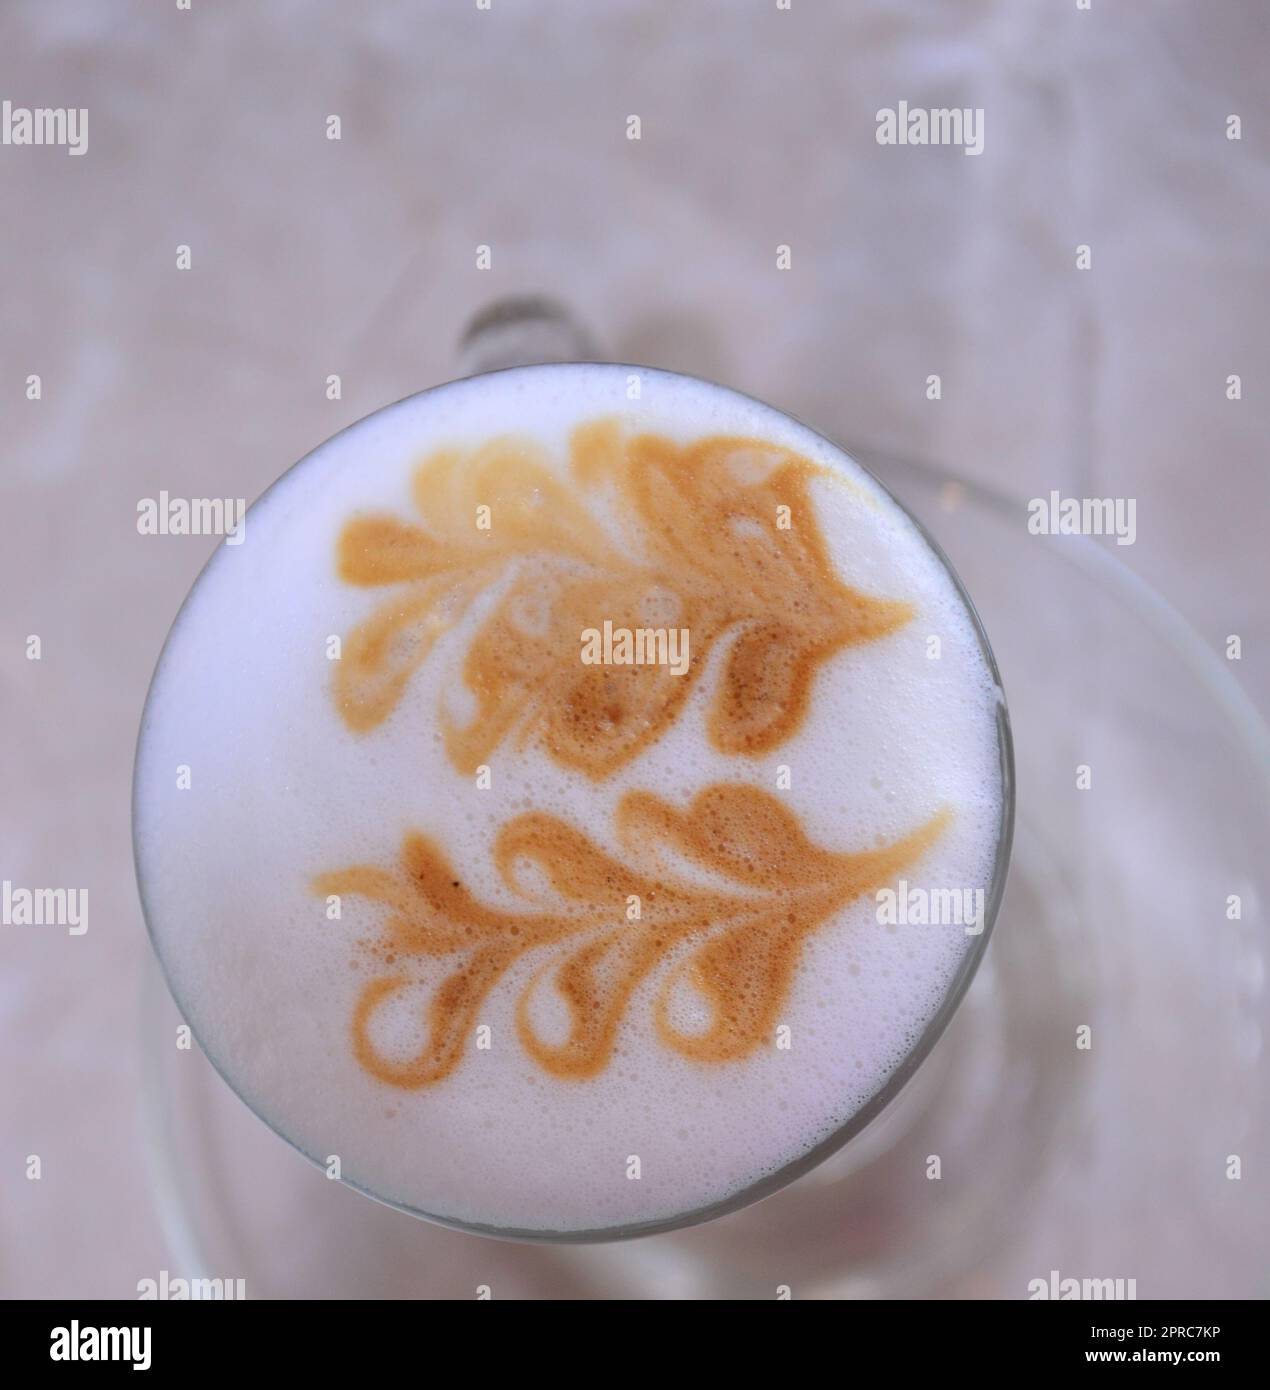 Motif de feuilles sur le dessus mousseux et laiteux d'un cappuccino, une boisson à base d'espresso Banque D'Images